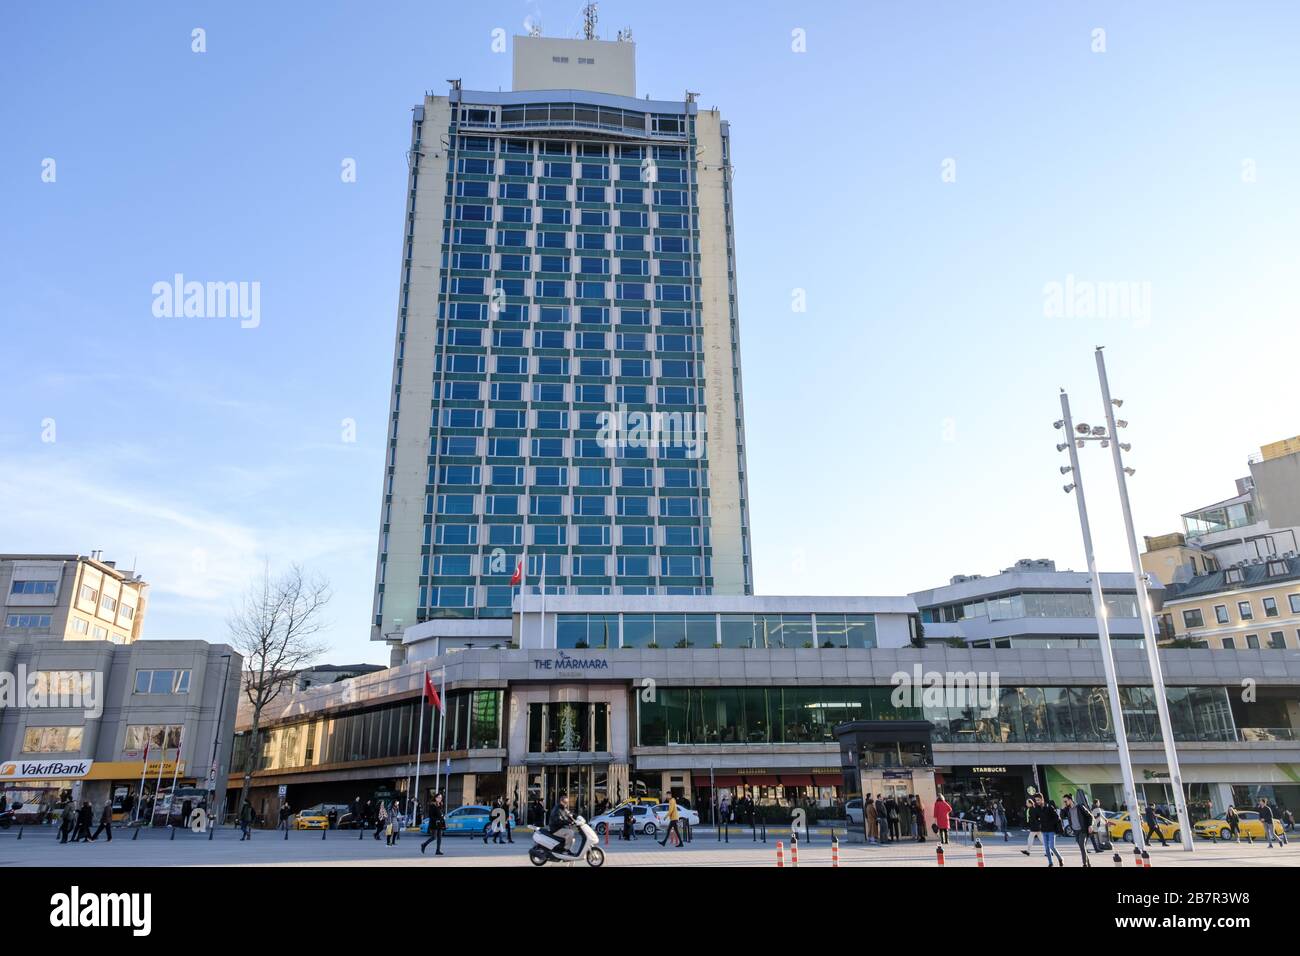 Istanbul, Turchia - 2 marzo 2020: Vista generale del Marmara Hotel. L'edificio e' un hotel di lusso situato in Piazza Taksim. Foto Stock